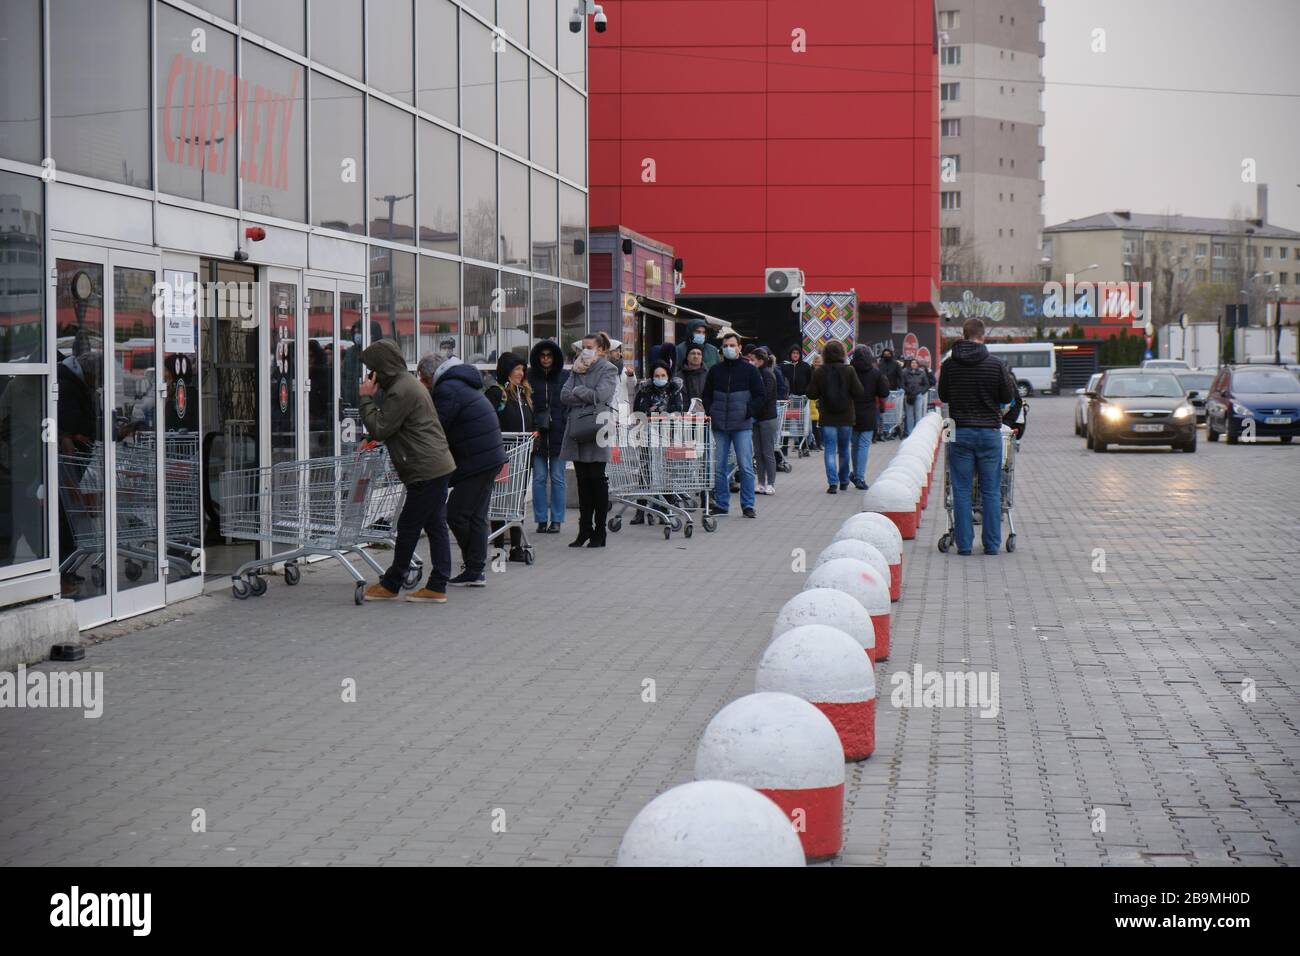 Bucarest, Romania - 24 marzo 2020: Gli acquirenti si trovano in coda fuori da un supermercato, dopo l'annuncio di un blocco Coronavirus. Foto Stock